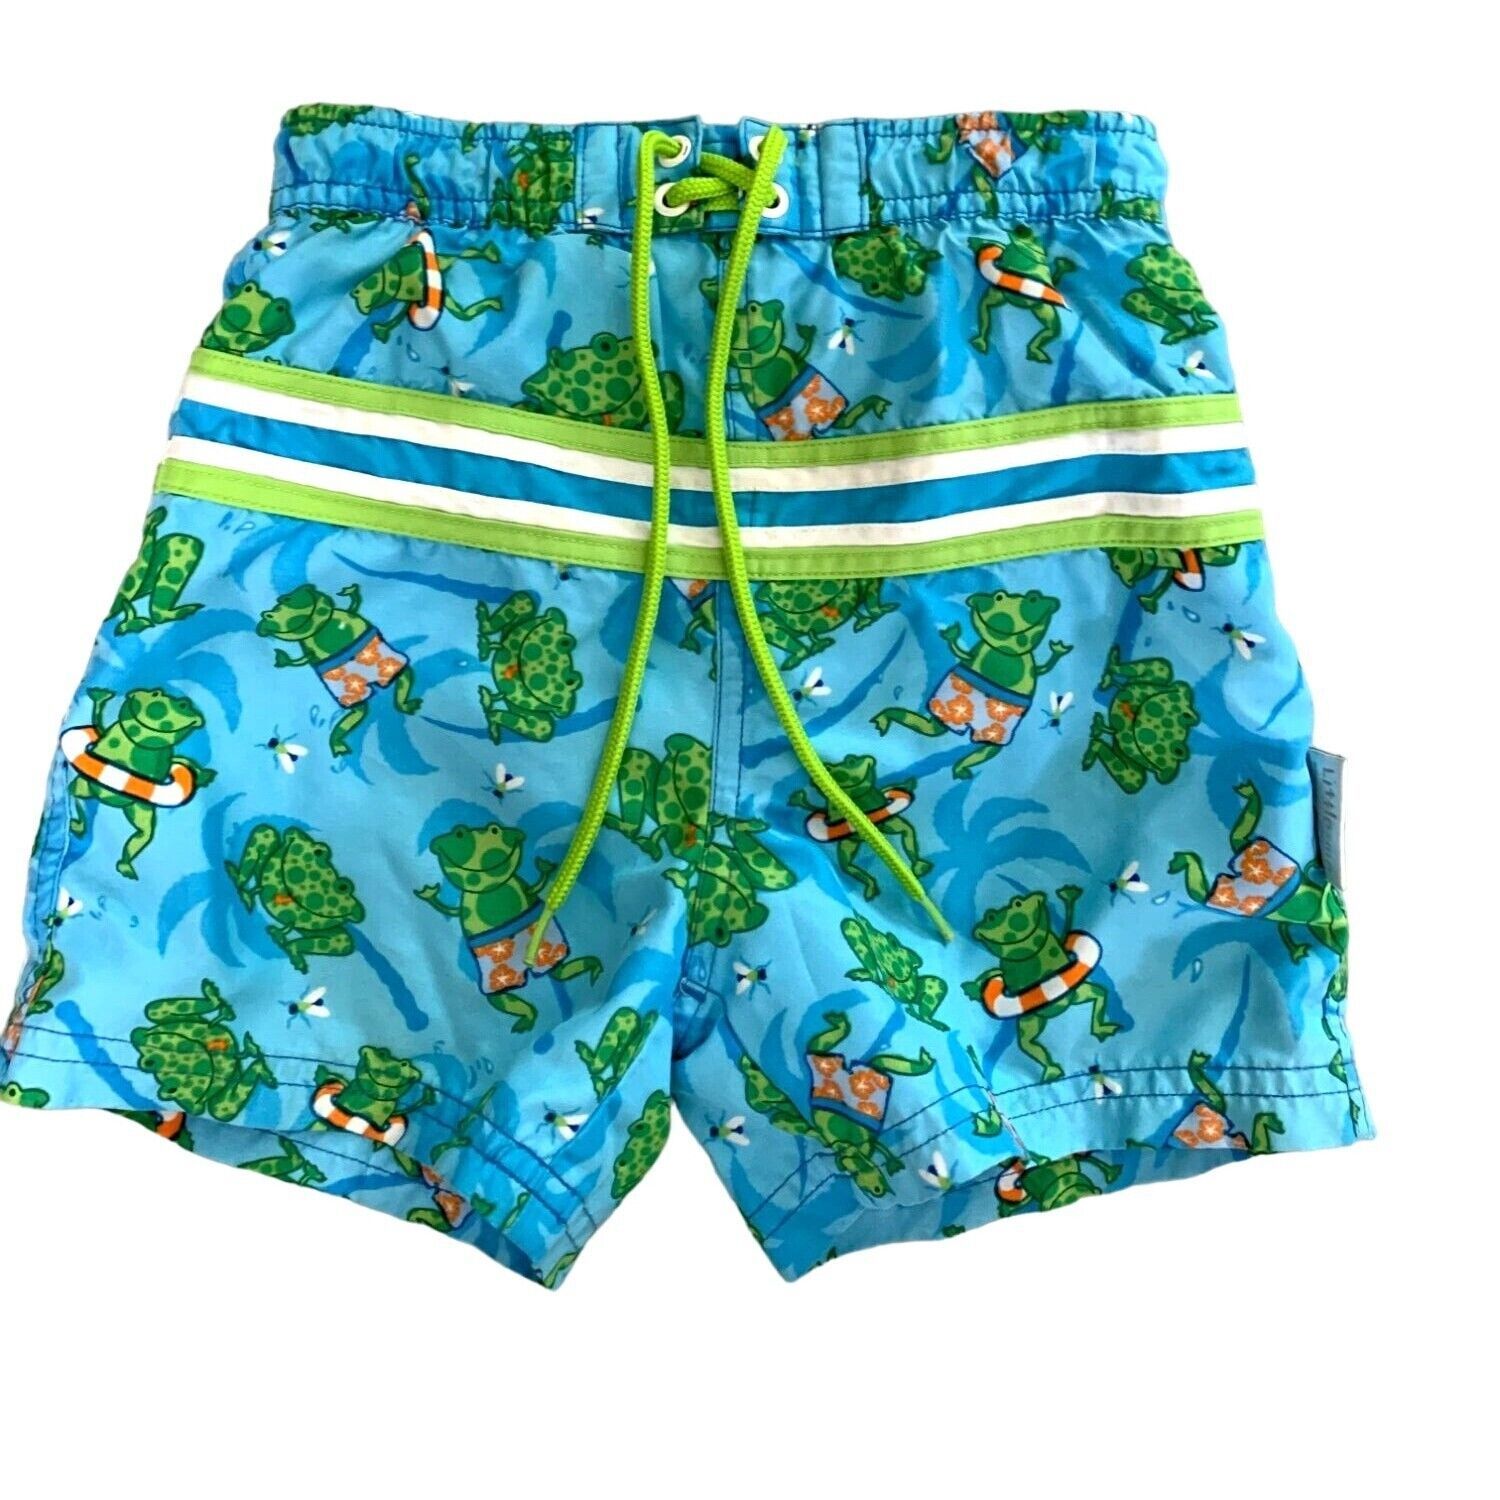 Little Me Boys Infant Baby Size 18 24 months Swim Trunks Blue Green Orange Short - $7.69